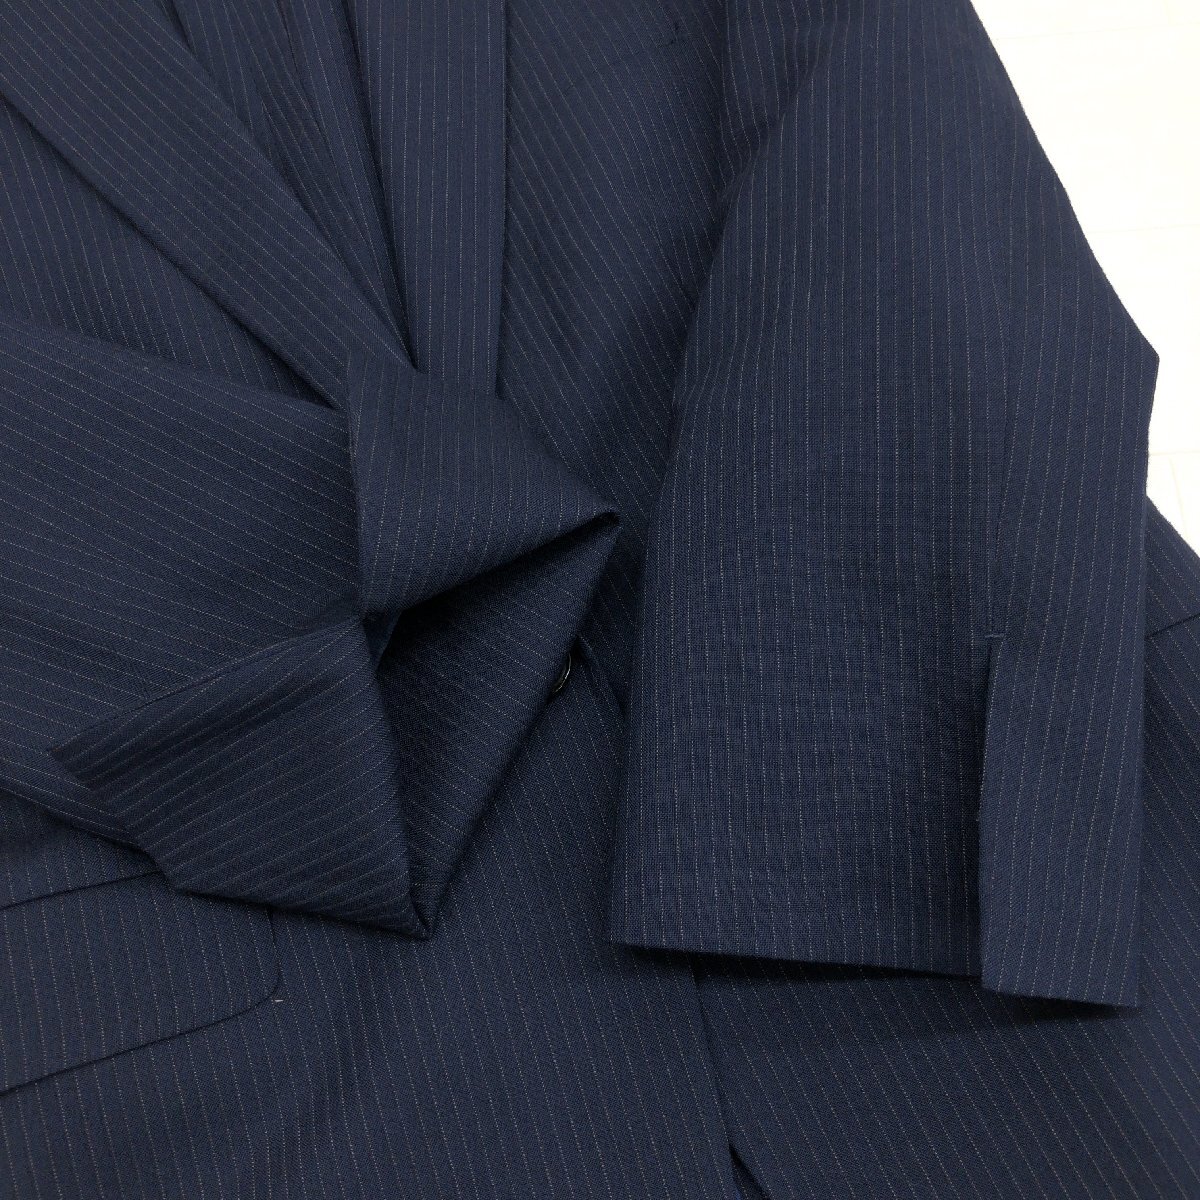 ●ORIHICA RHYME オリヒカ ウォッシャブル 1B スカートスーツ 7(S) 濃紺 ネイビー ジャケット 七分袖 春夏用 国内正規品 レディース 女性用の画像6